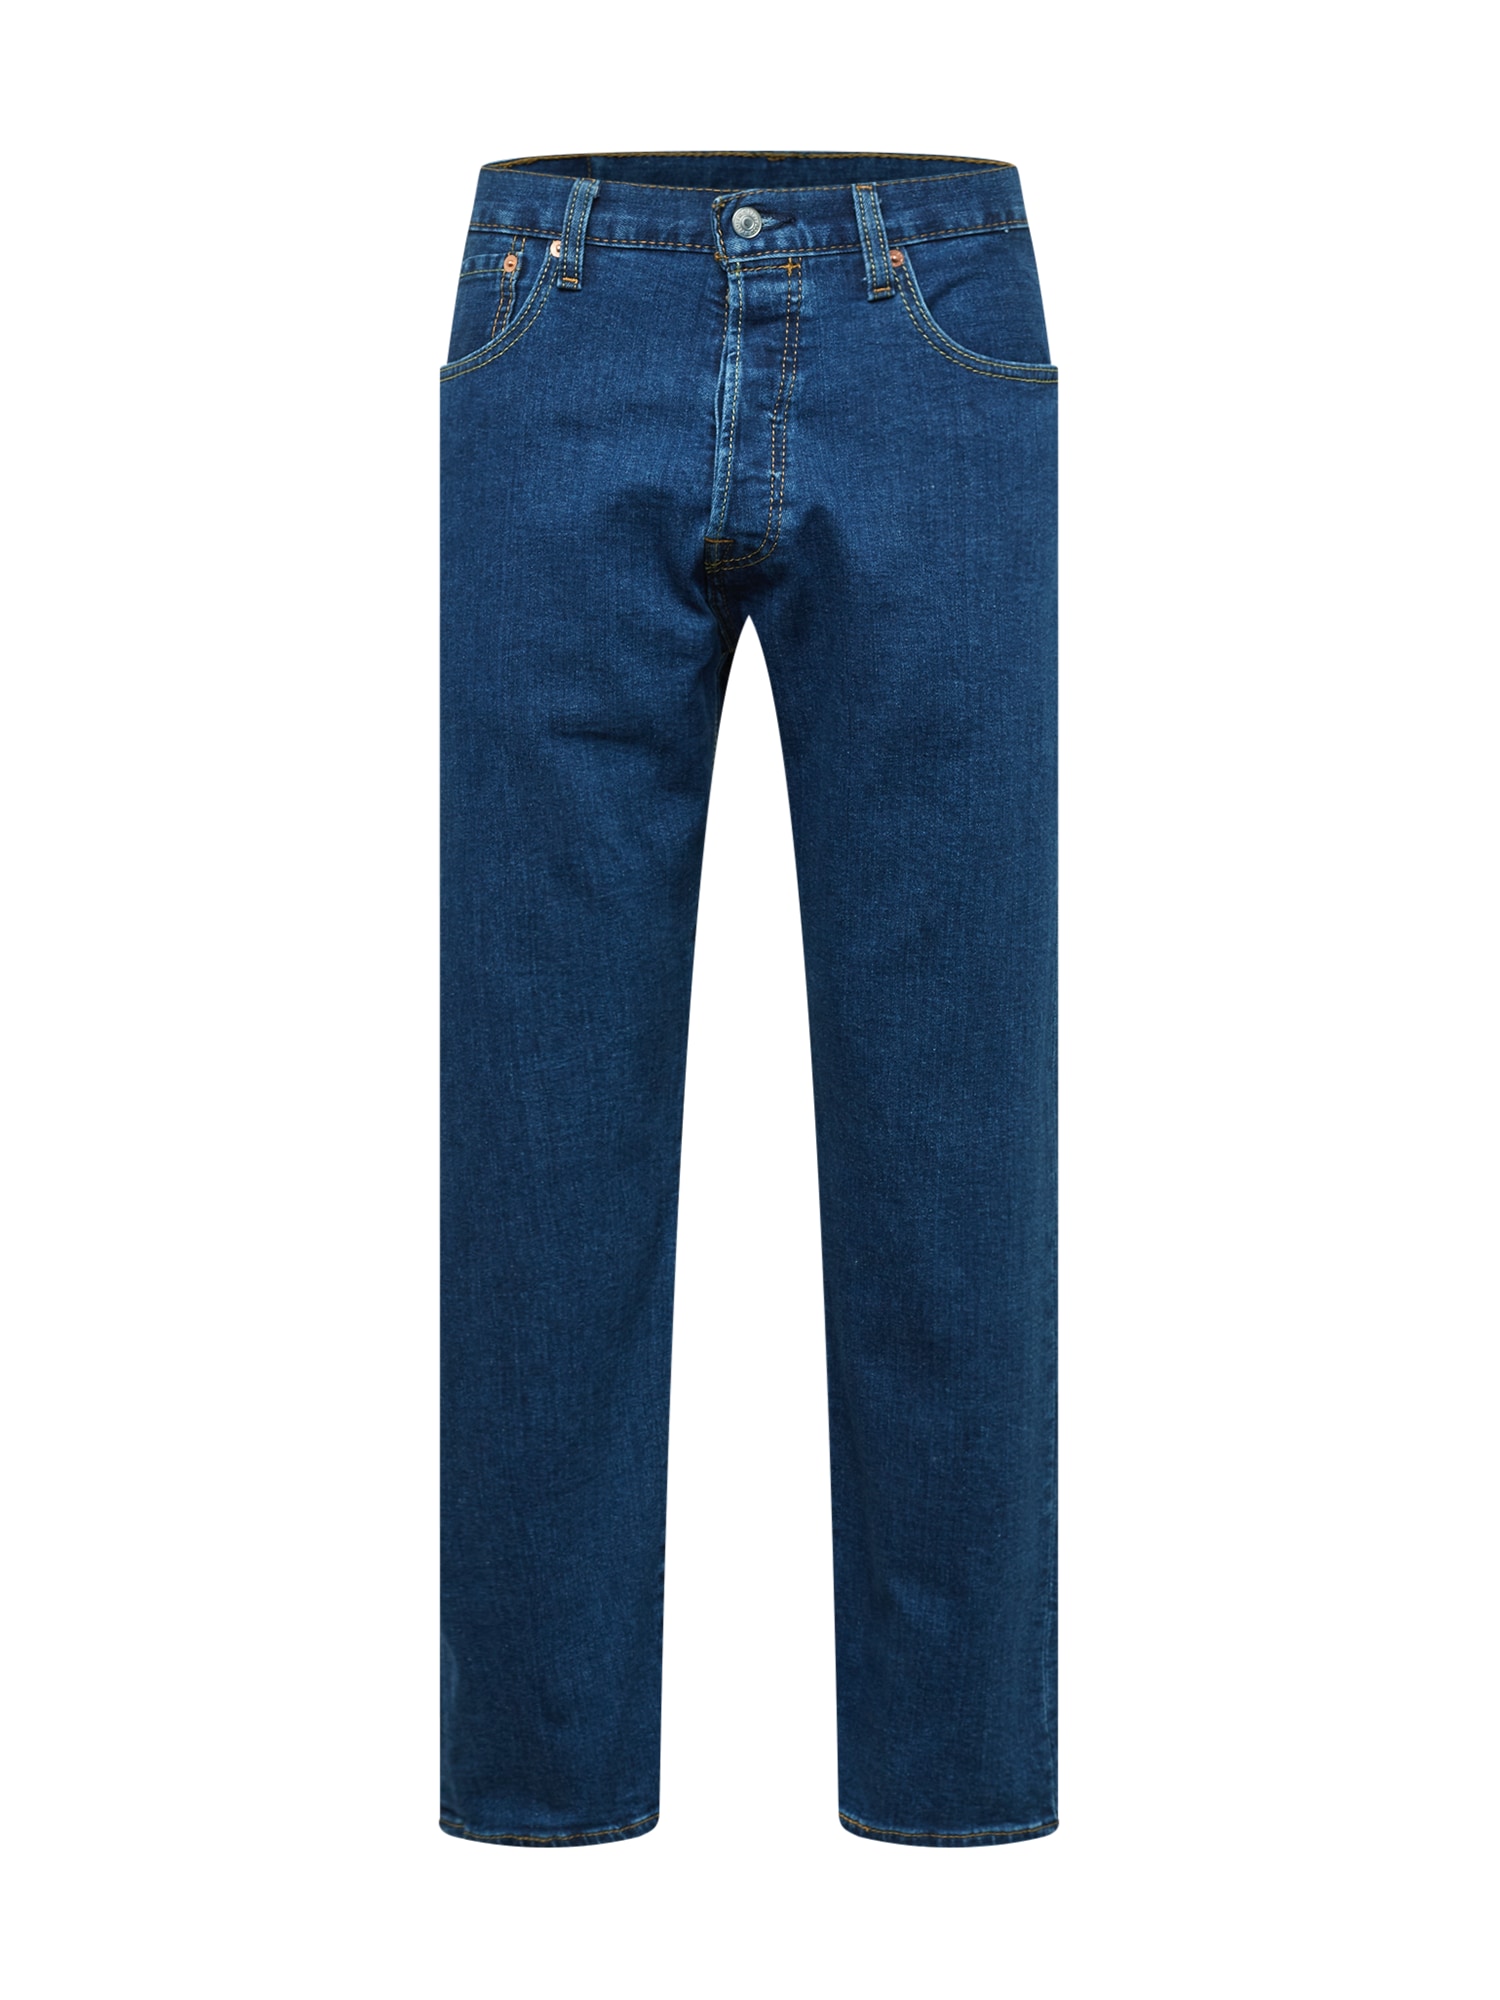 Jeans '501 '93 CROP' von Levis